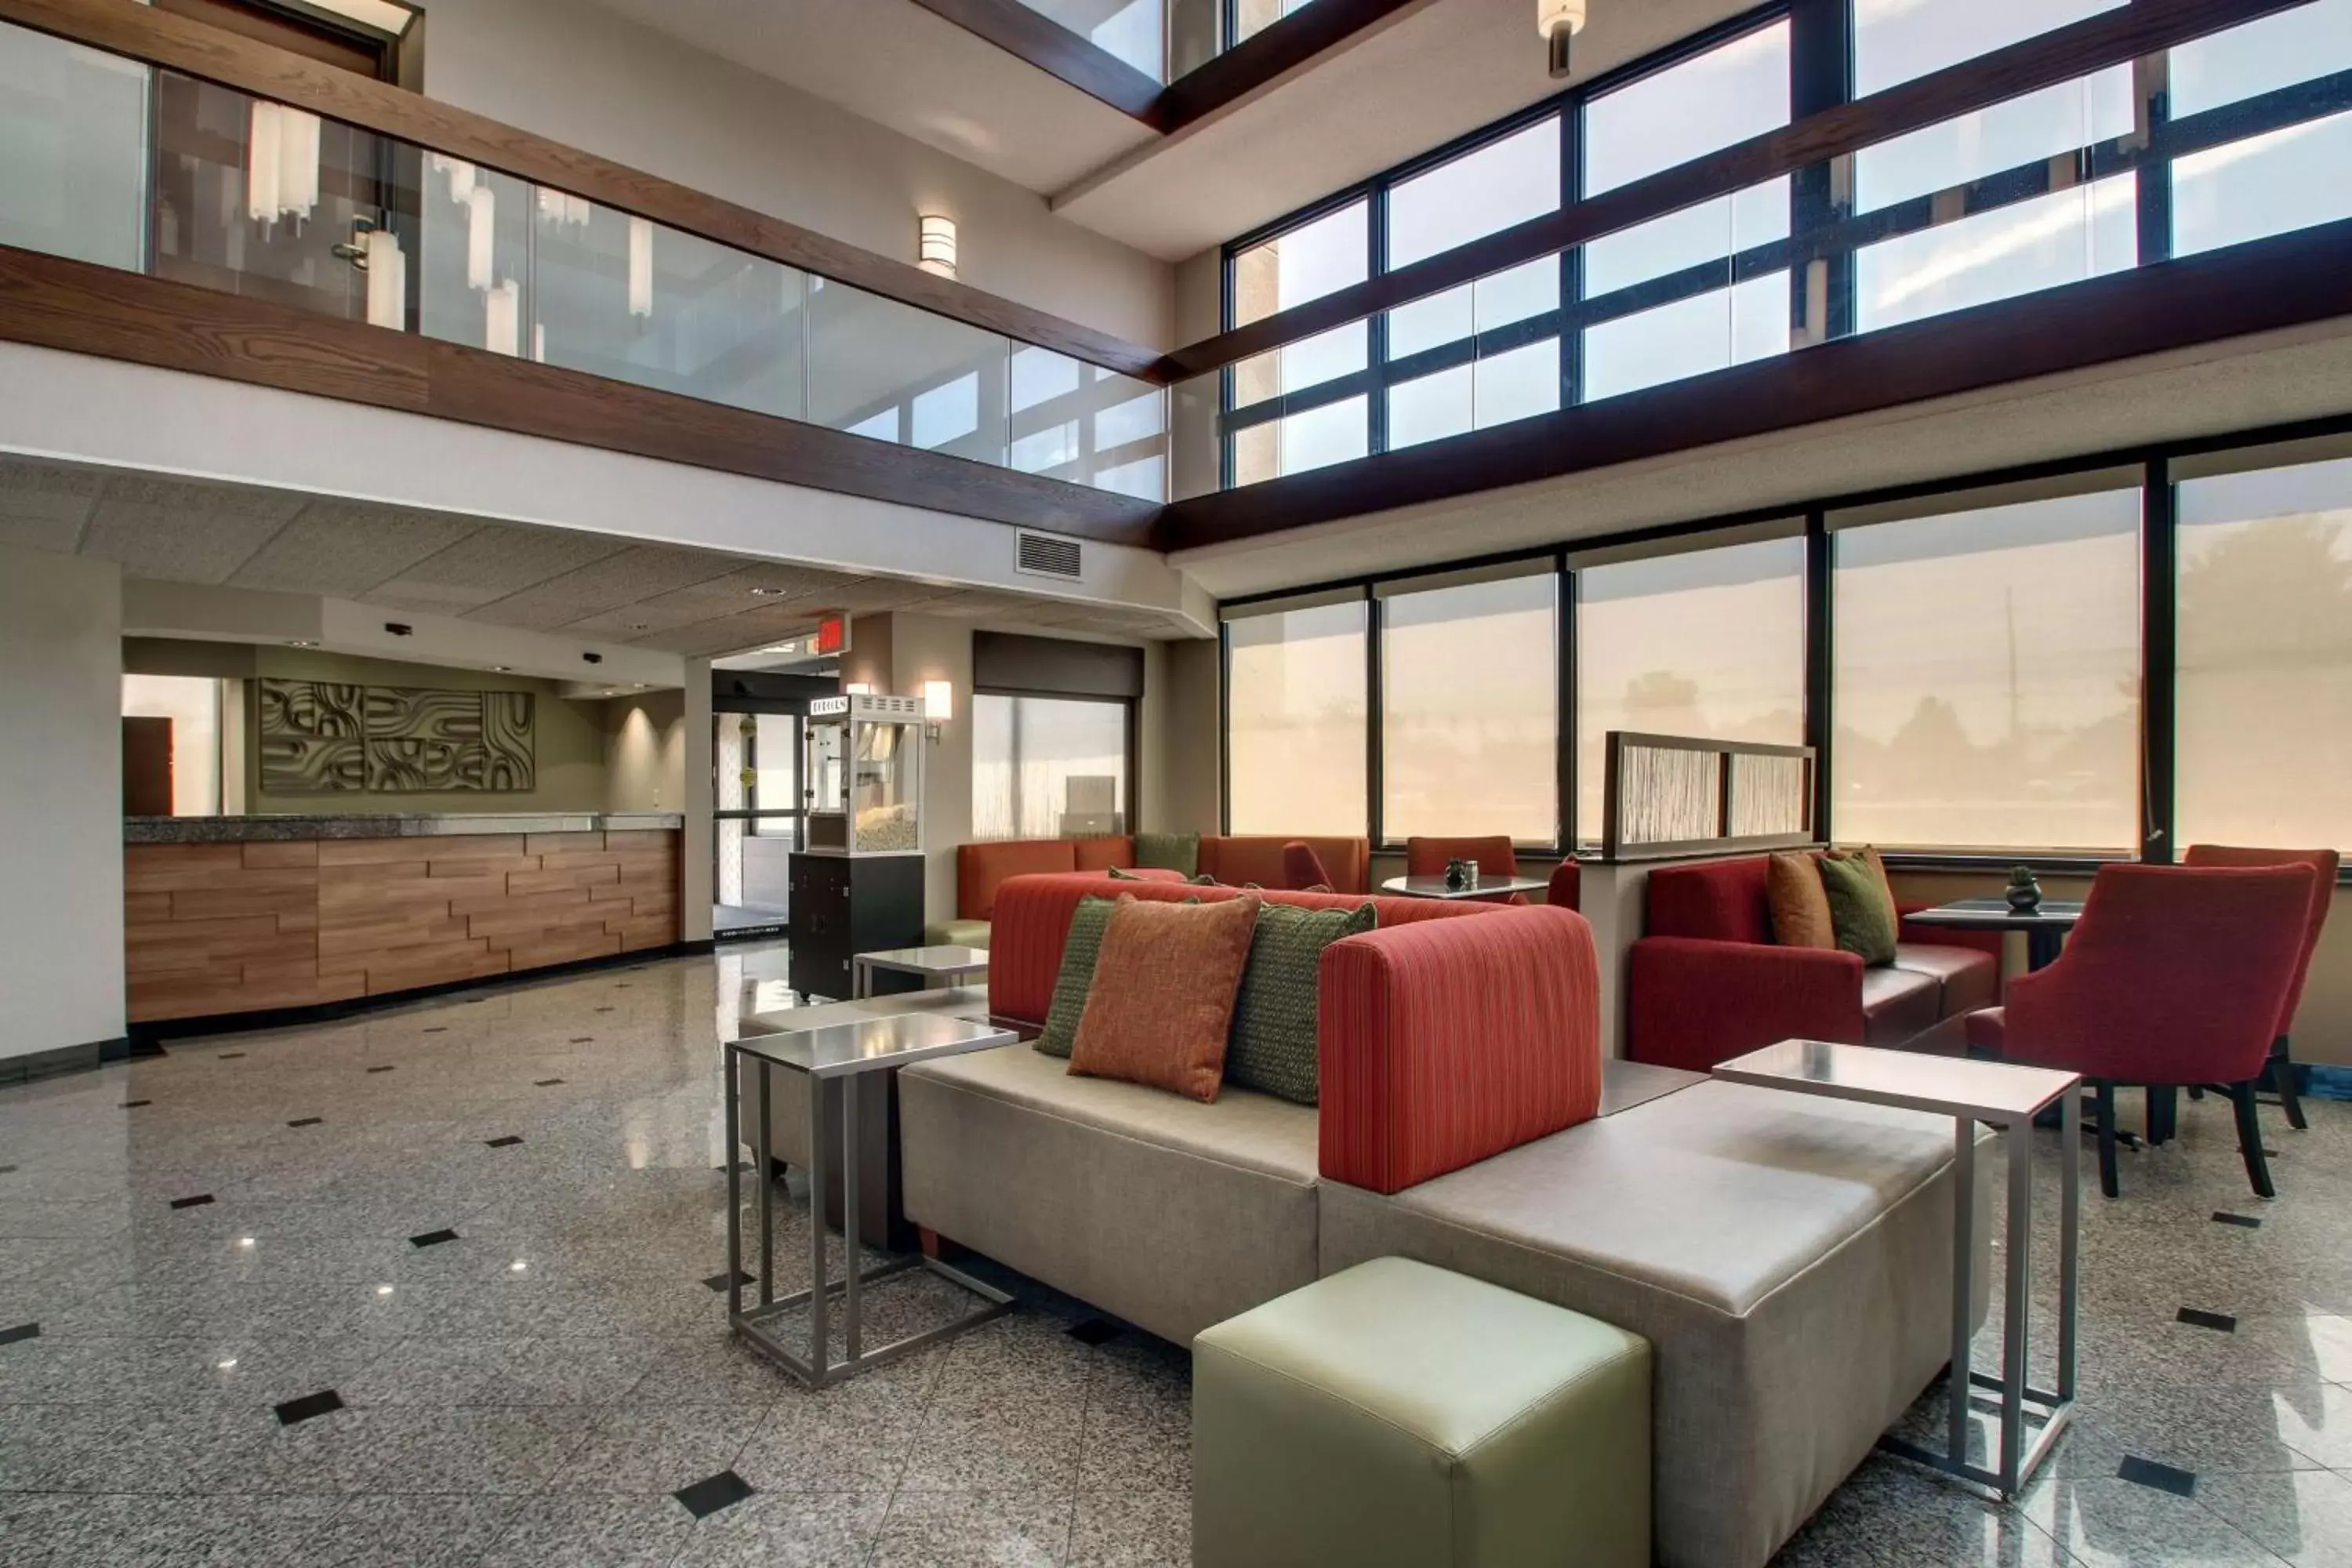 Lobby or reception in Drury Inn & Suites Evansville East